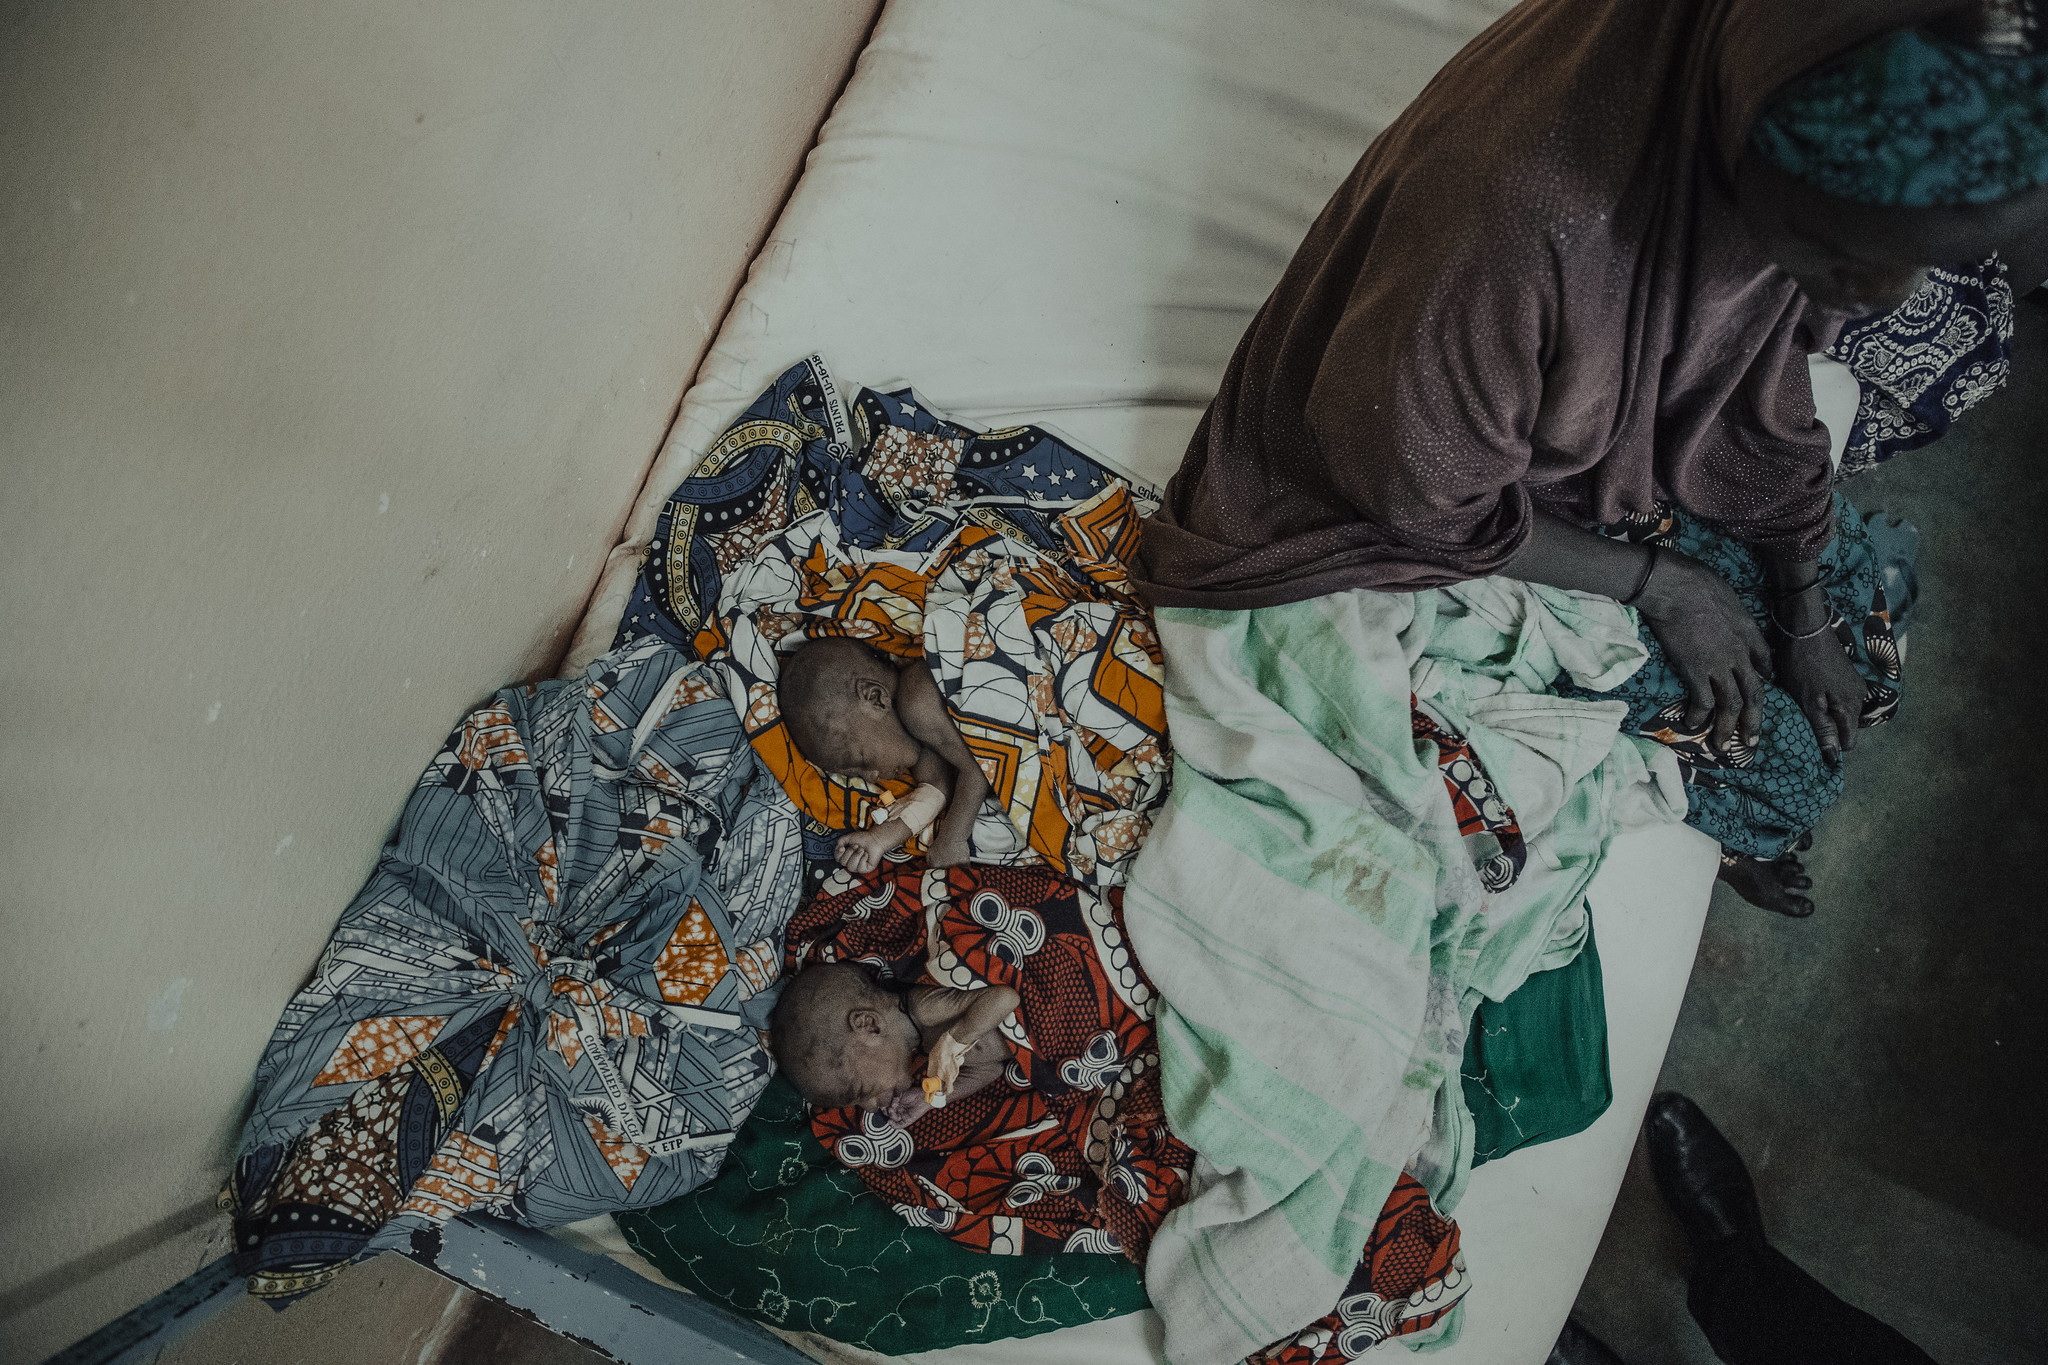  Accouchements à domicile dans la commune rurale de Tondikandia : quels risques pour la mère et le nouveau-né ?